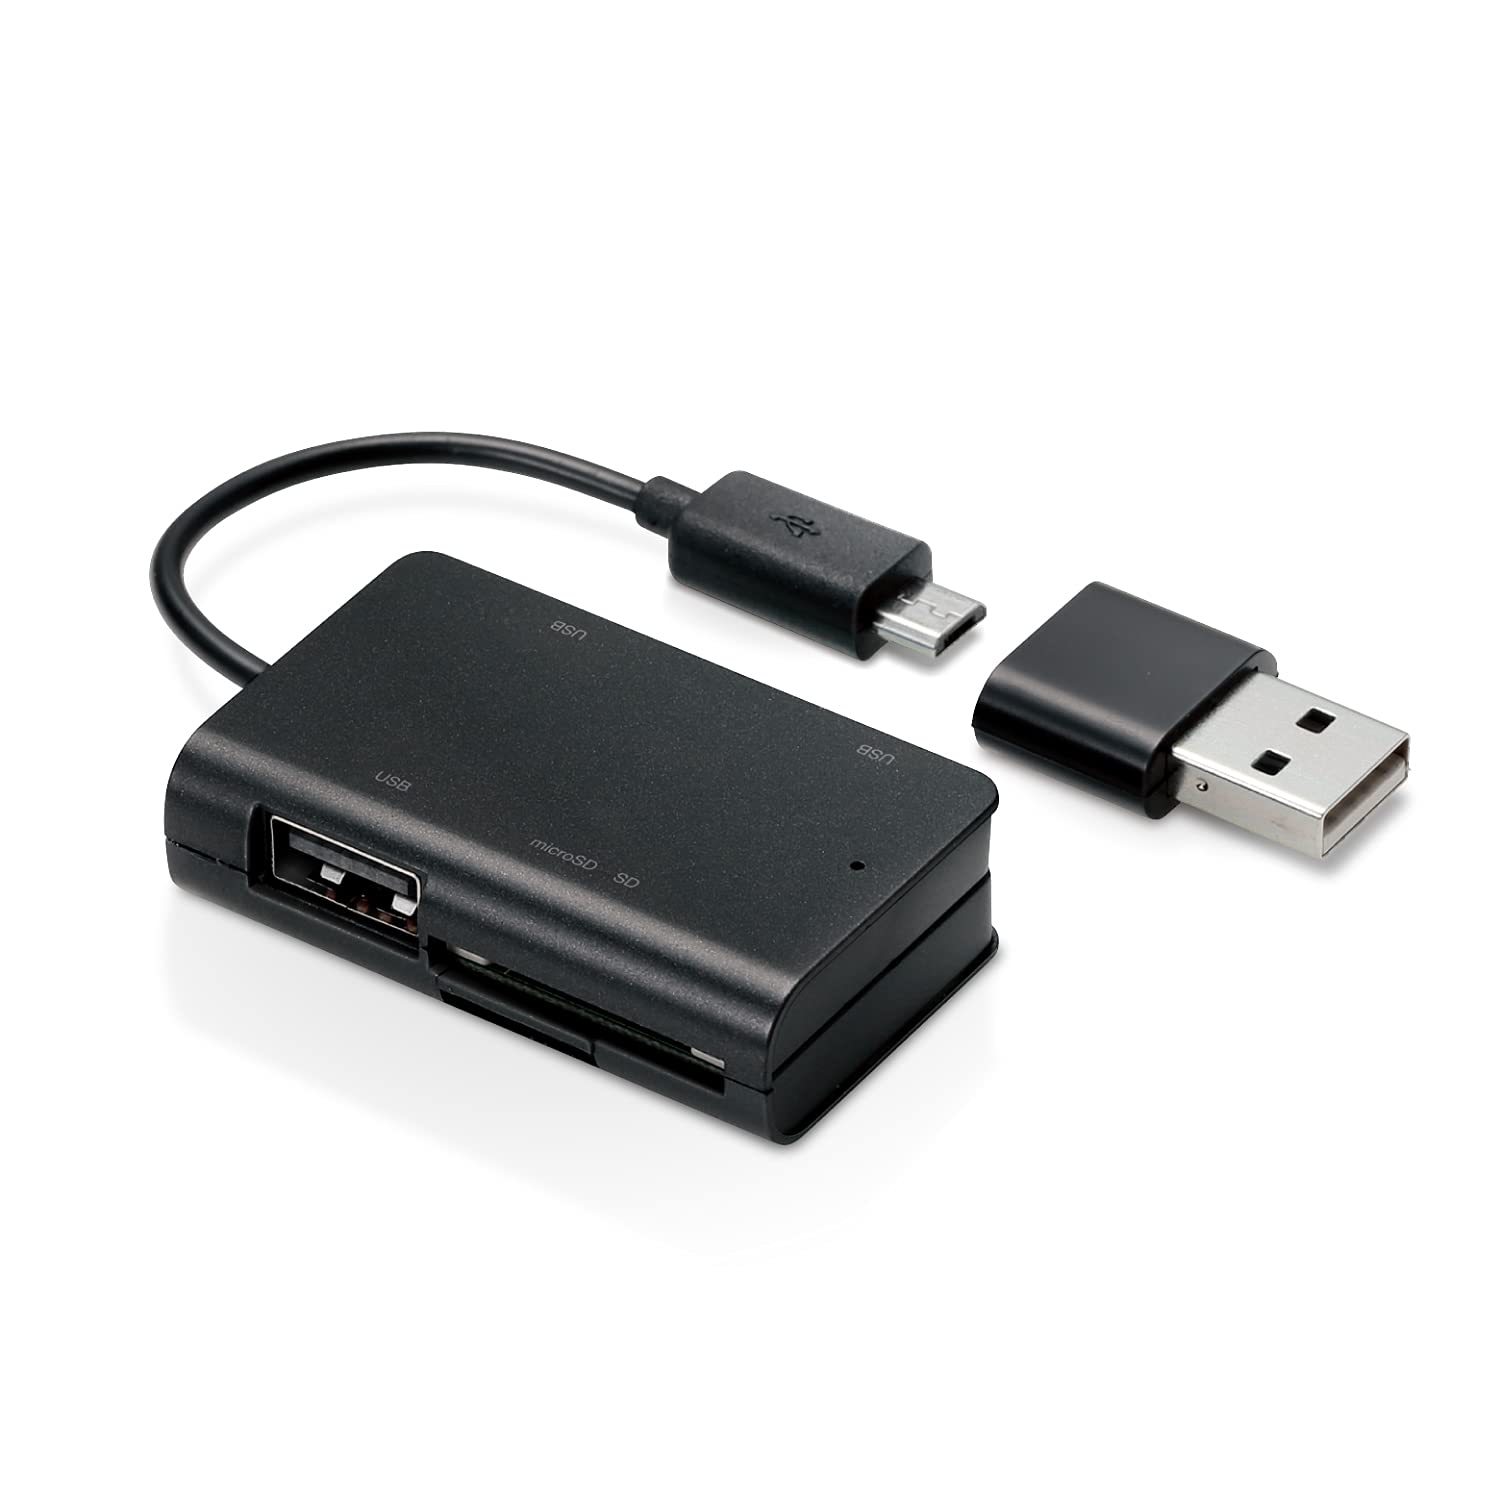 エレコム カードリーダー USB2.0 microUSBコネクタ搭載 変換コネクタ付 ケーブル一体タイプ パソコン スマホ タブレット対応 ブラック MR